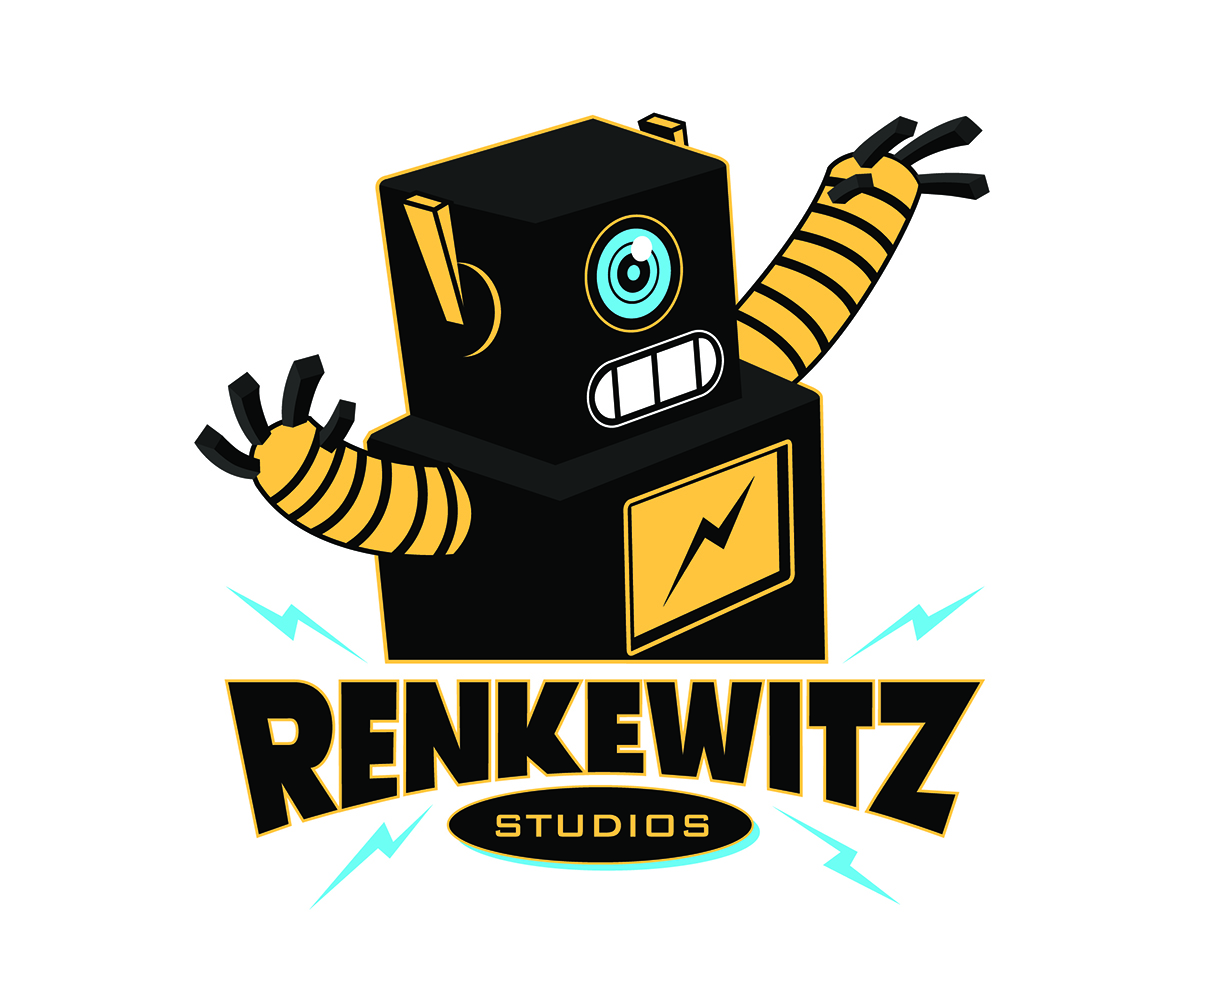 Renkewitz Studios